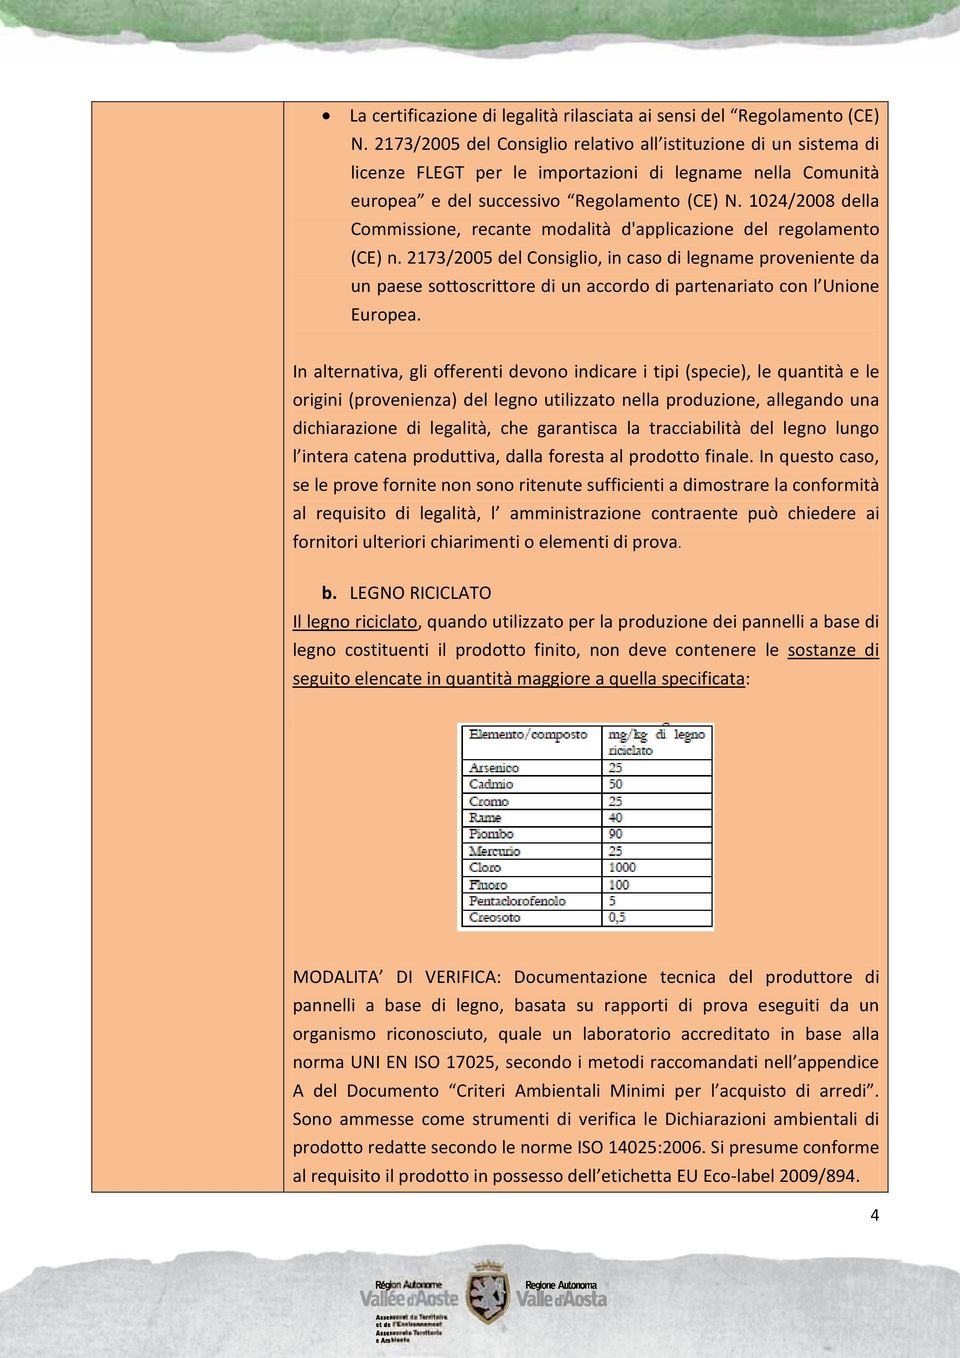 1024/2008 della Commissione, recante modalità d'applicazione del regolamento (CE) n.